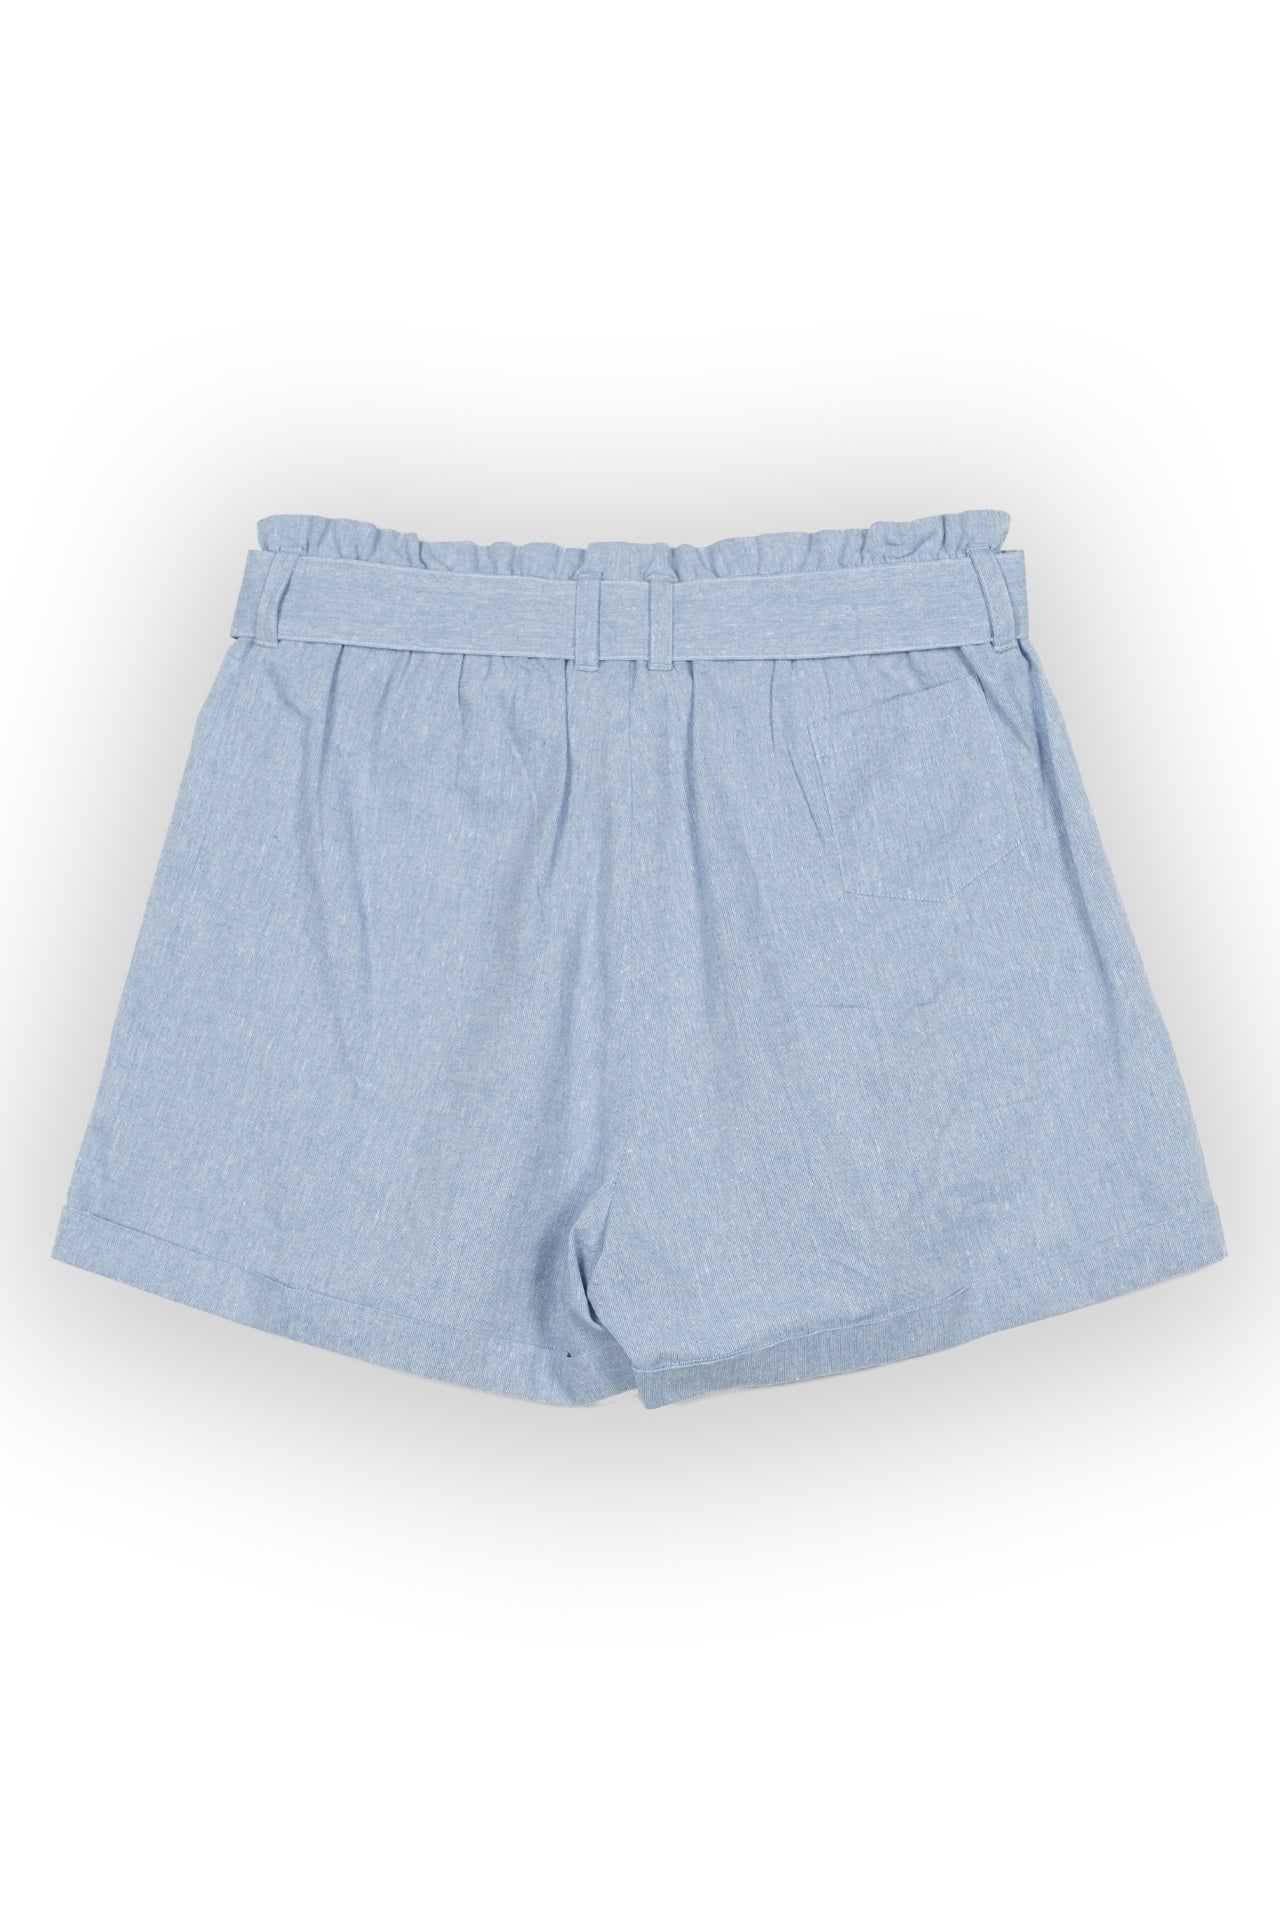 Mabel Chambray Paperbag Waist Shorts - Rupert and Buckley - Shorts